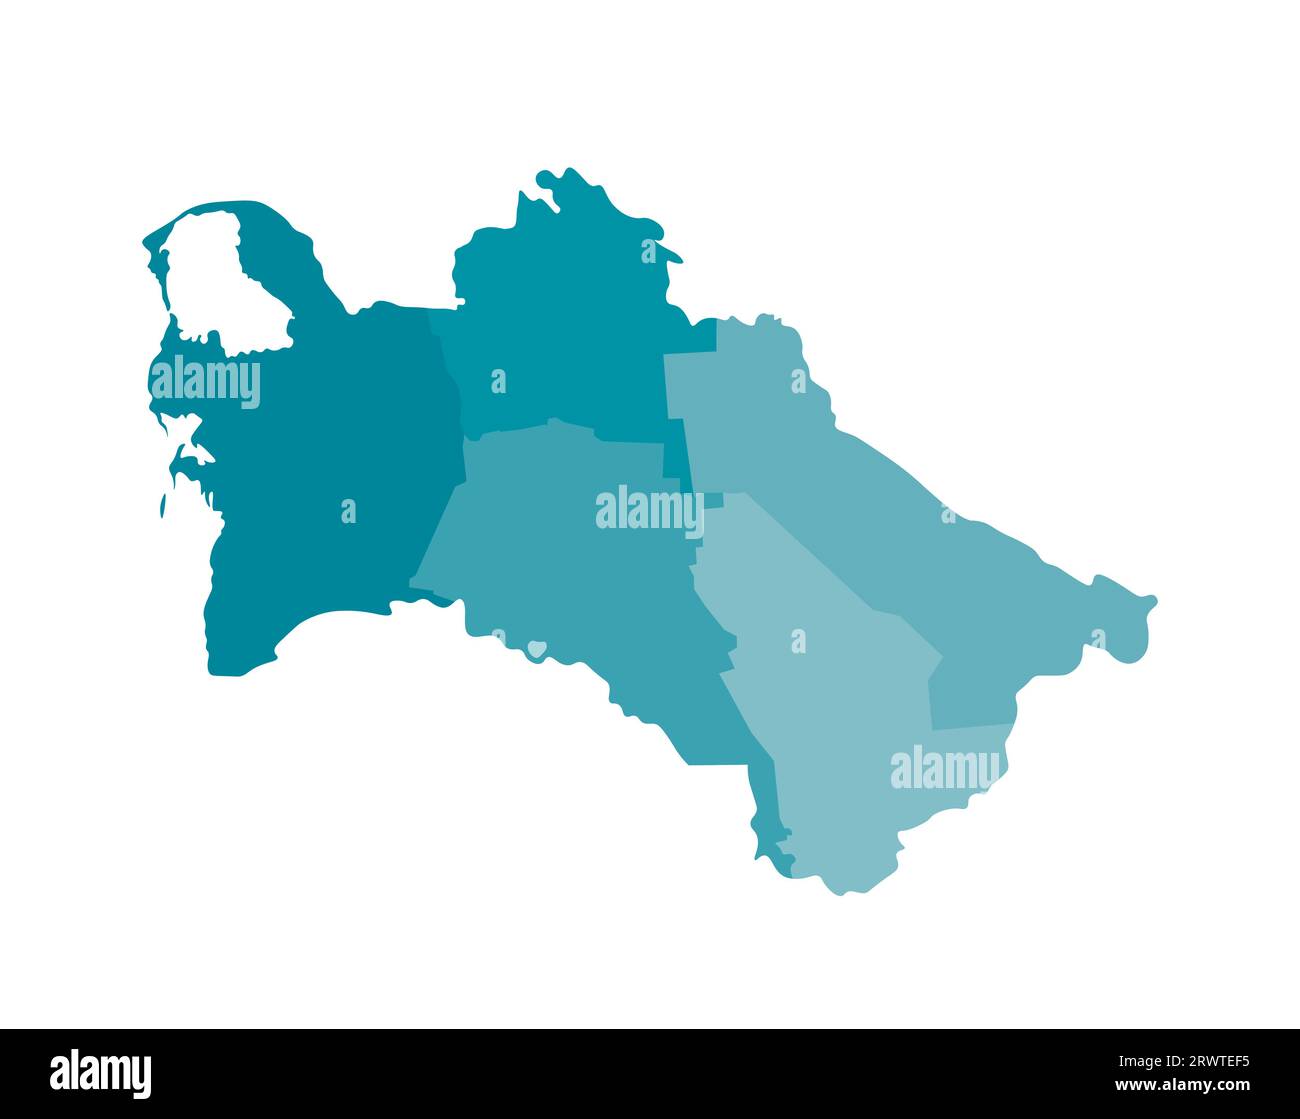 Vektorisolierte Darstellung einer vereinfachten Verwaltungskarte Turkmenistans. Grenzen der Bezirke (Regionen). Farbenfrohe, khakifarbene Silhouetten. Stock Vektor